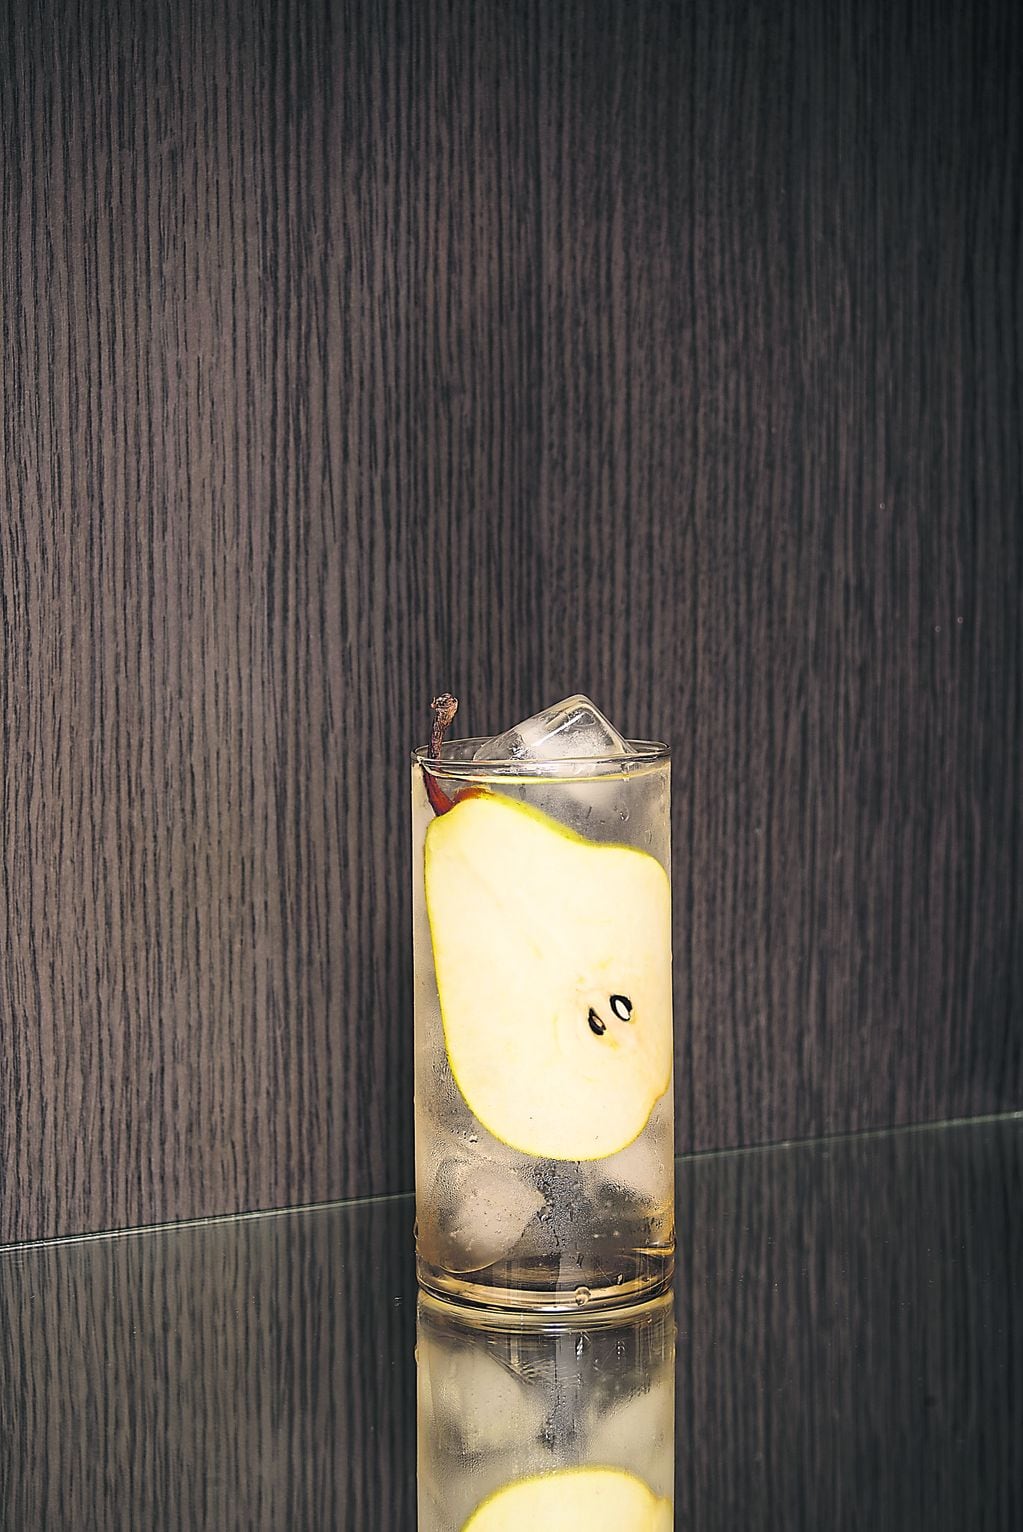 Aperitivo de invierno: peras y vino blanco, una propuesta de la bartender Pipi Yalour.